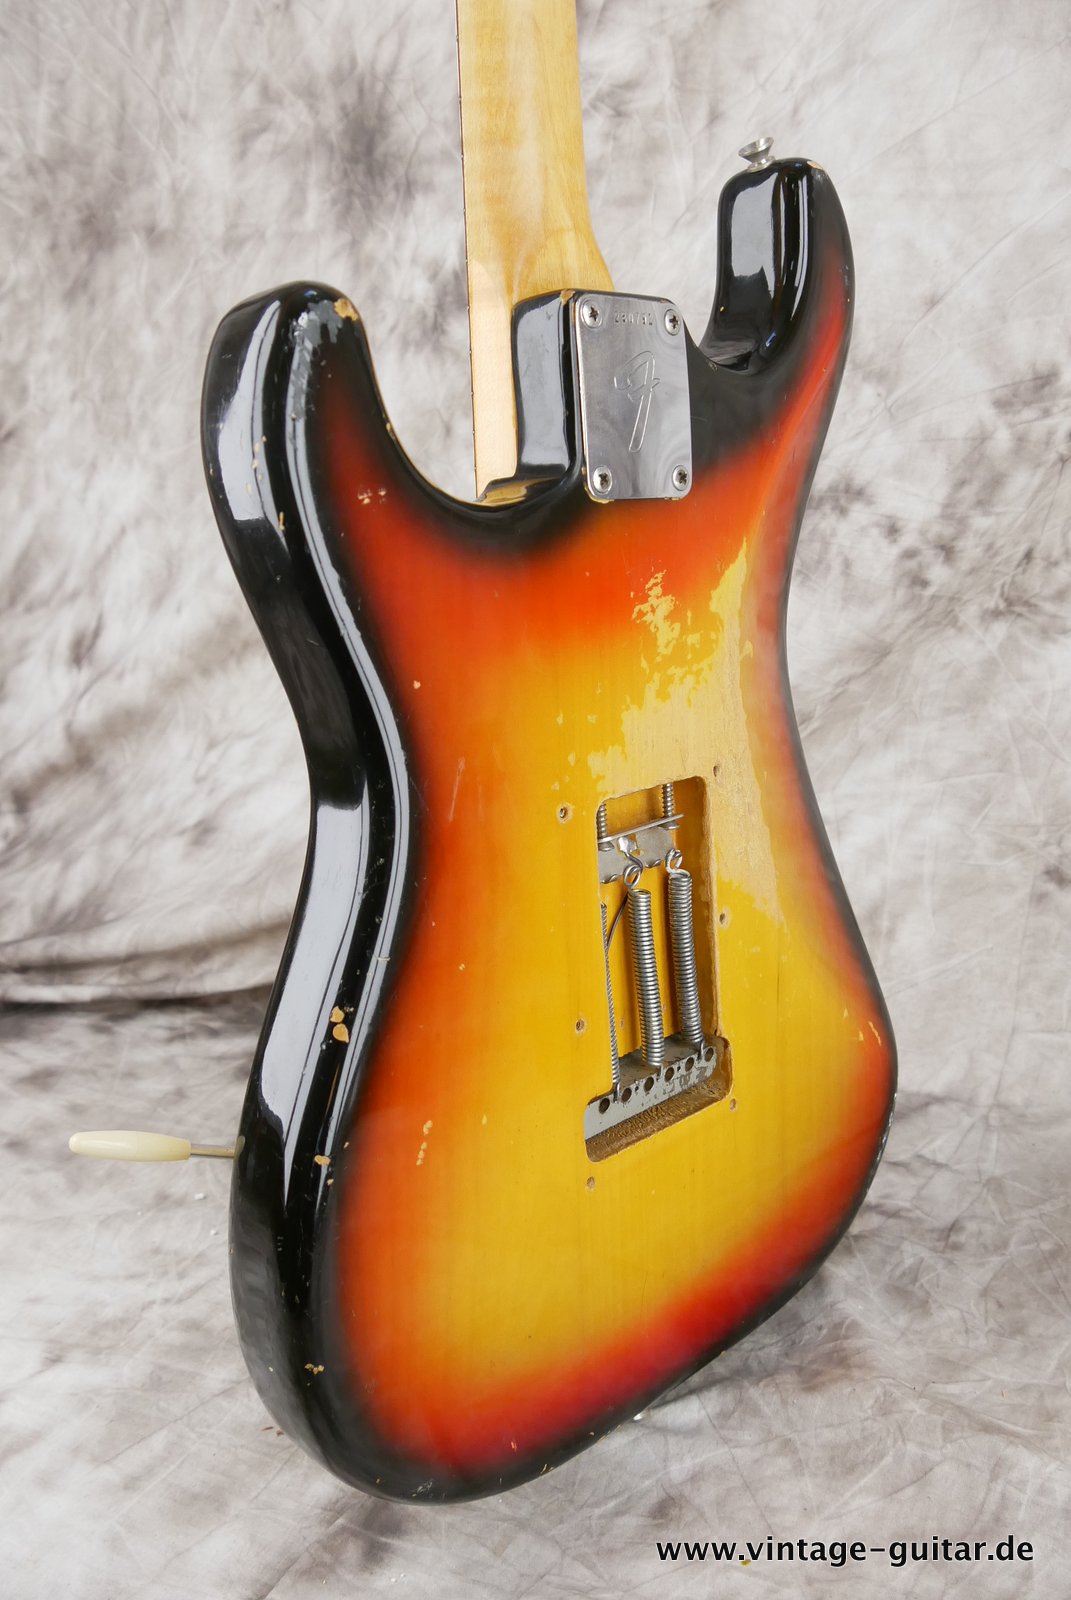 Fender-Stratocaster-1972-sunburst-4-hole-007.JPG